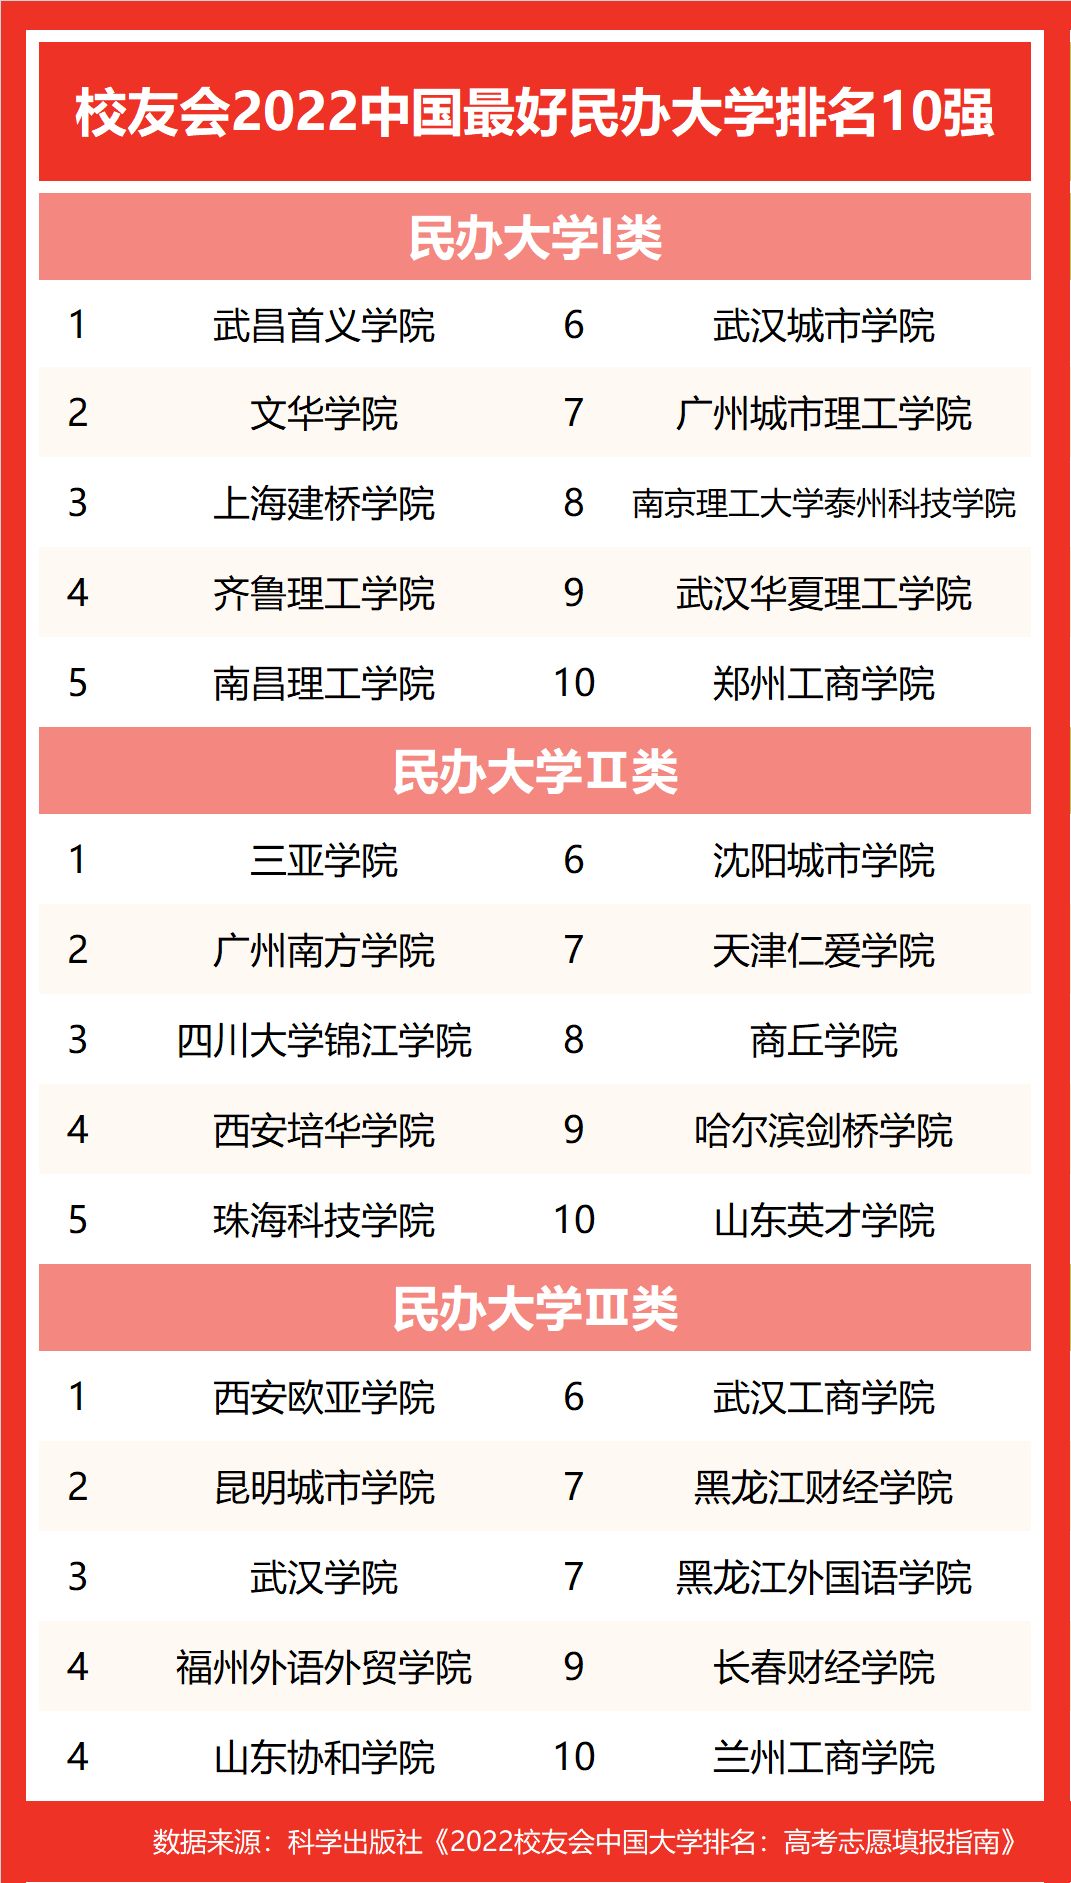 校友会2022中国最好民办大学排名，武昌首义学院连续17年蝉联第一